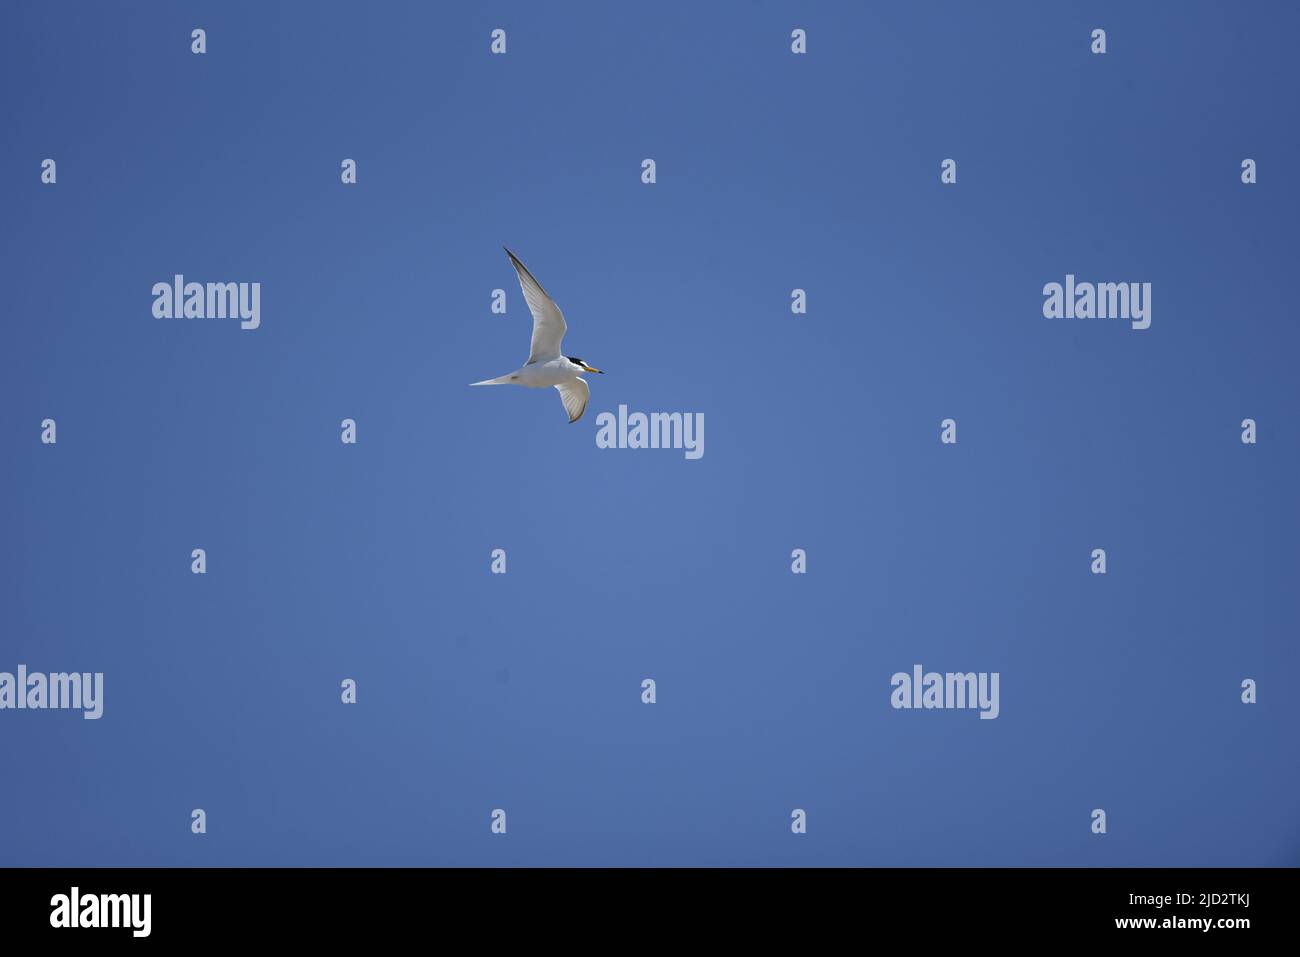 Petite Sterne ensoleillée (Sterna albifrons) volant de gauche à droite avec des ailes écarlées, à gauche de l'image, contre un ciel bleu sur l'île de Man, Royaume-Uni Banque D'Images